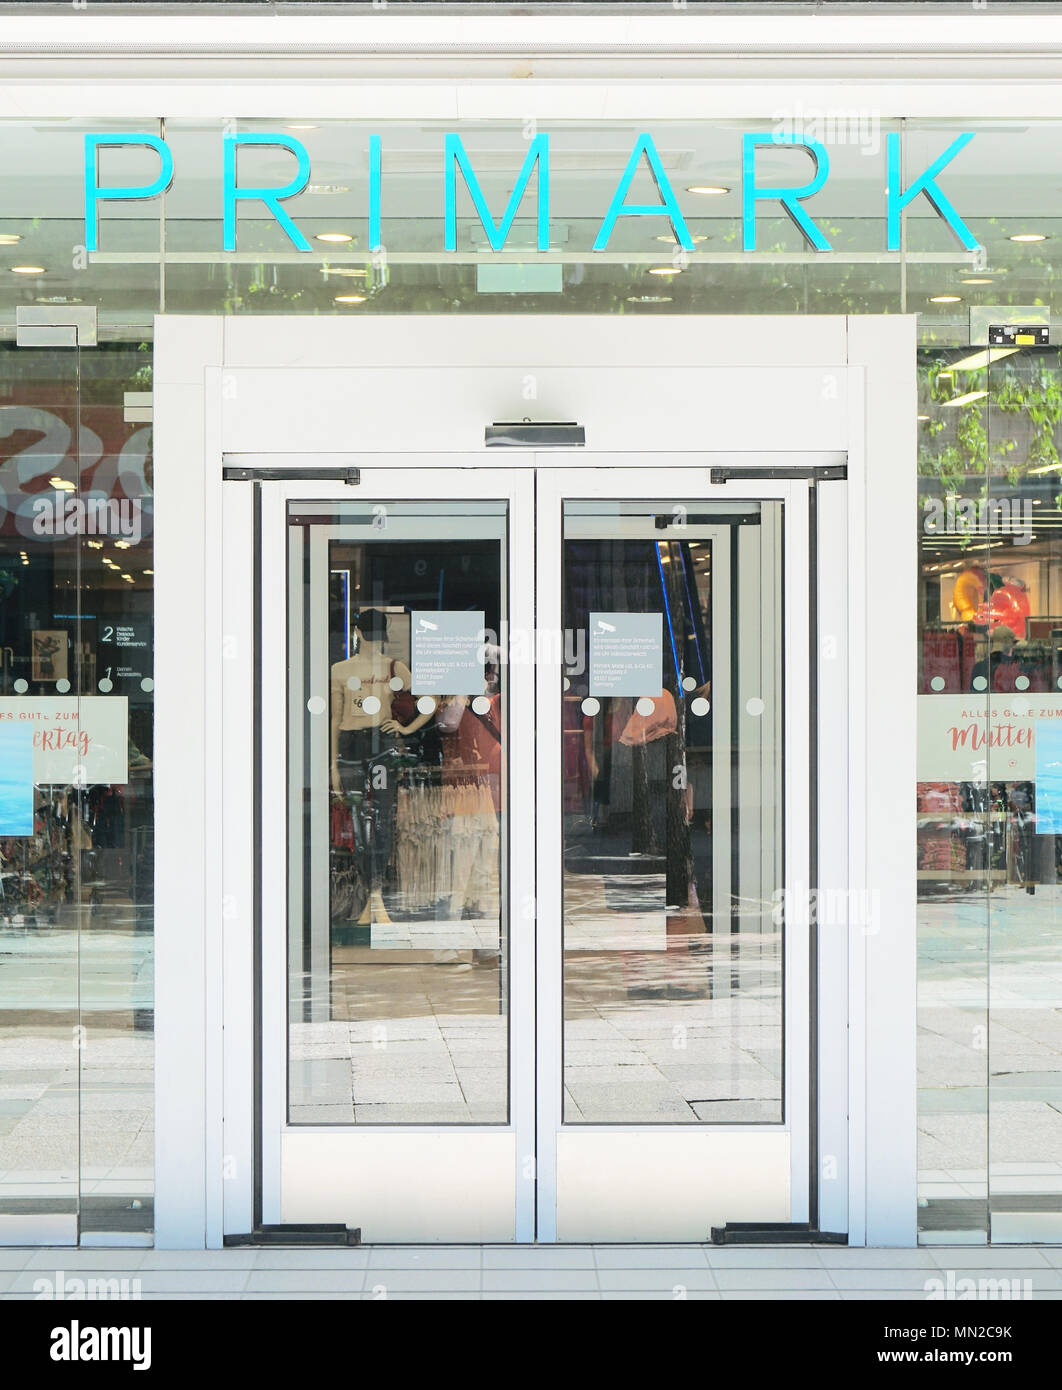 Hannover, Alemania - 7 de mayo de 2018: Primark logo símbolo encima de la puerta de entrada de una tienda local de moda rápida irlandesa Chain Store Compañía. Foto de stock